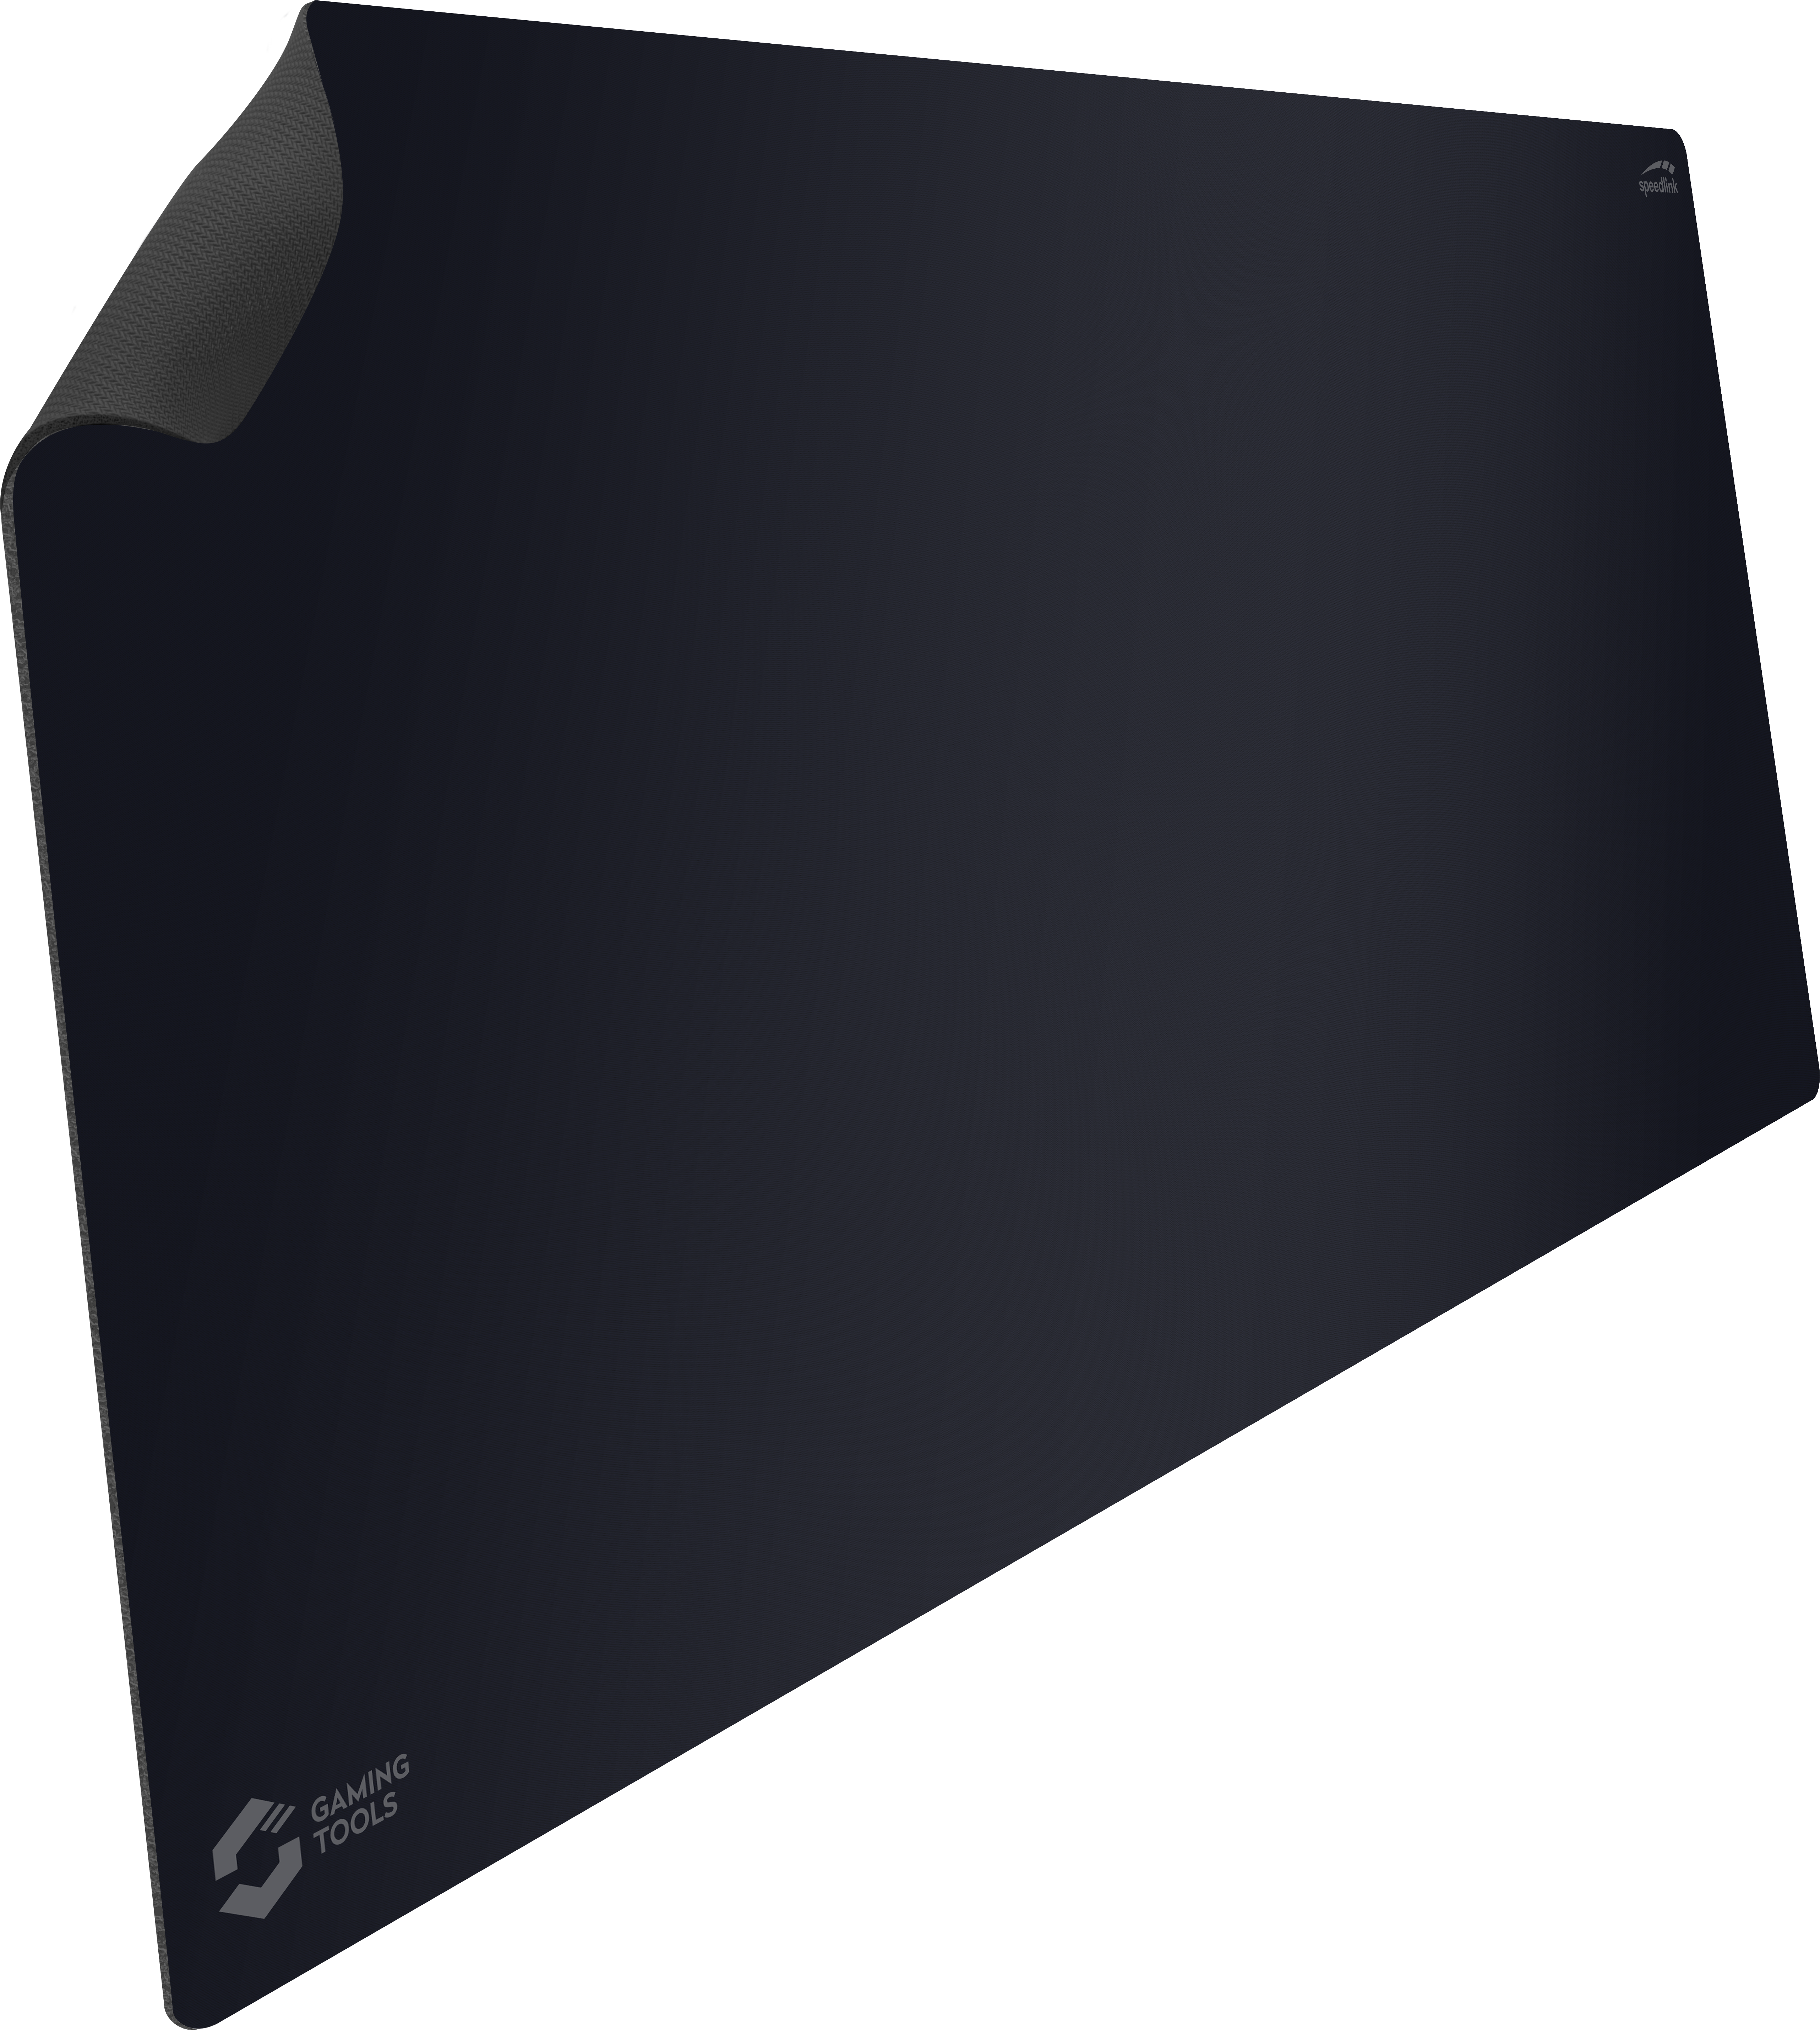 ATECS Soft Gaming Mauspad - Size XXL, schwarz 